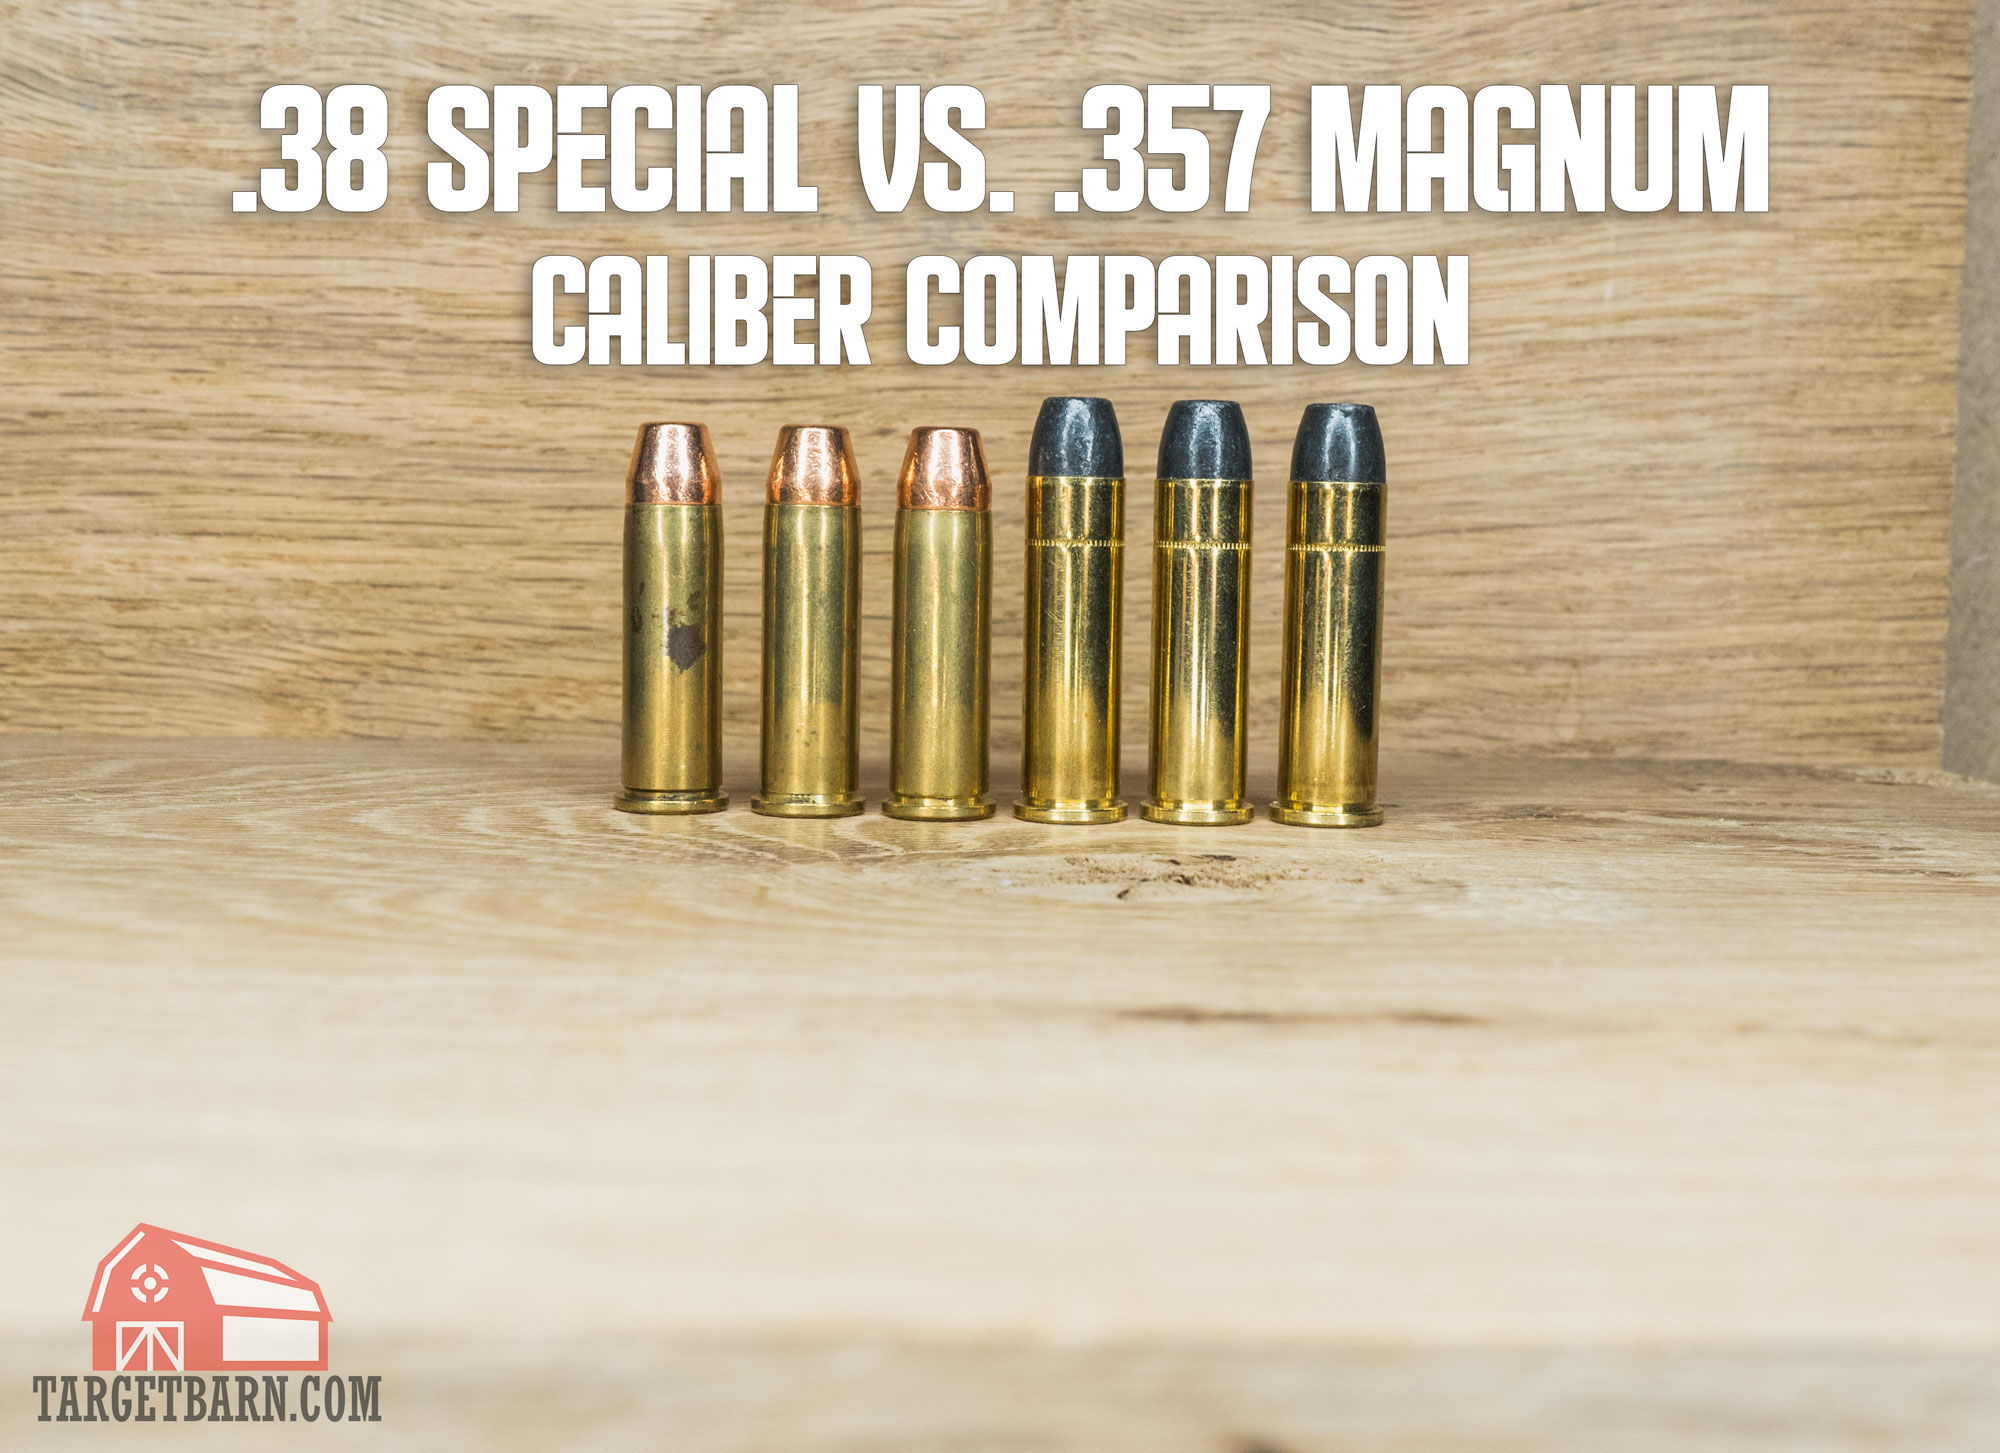 44 magnum vs 357 magnum ballistics